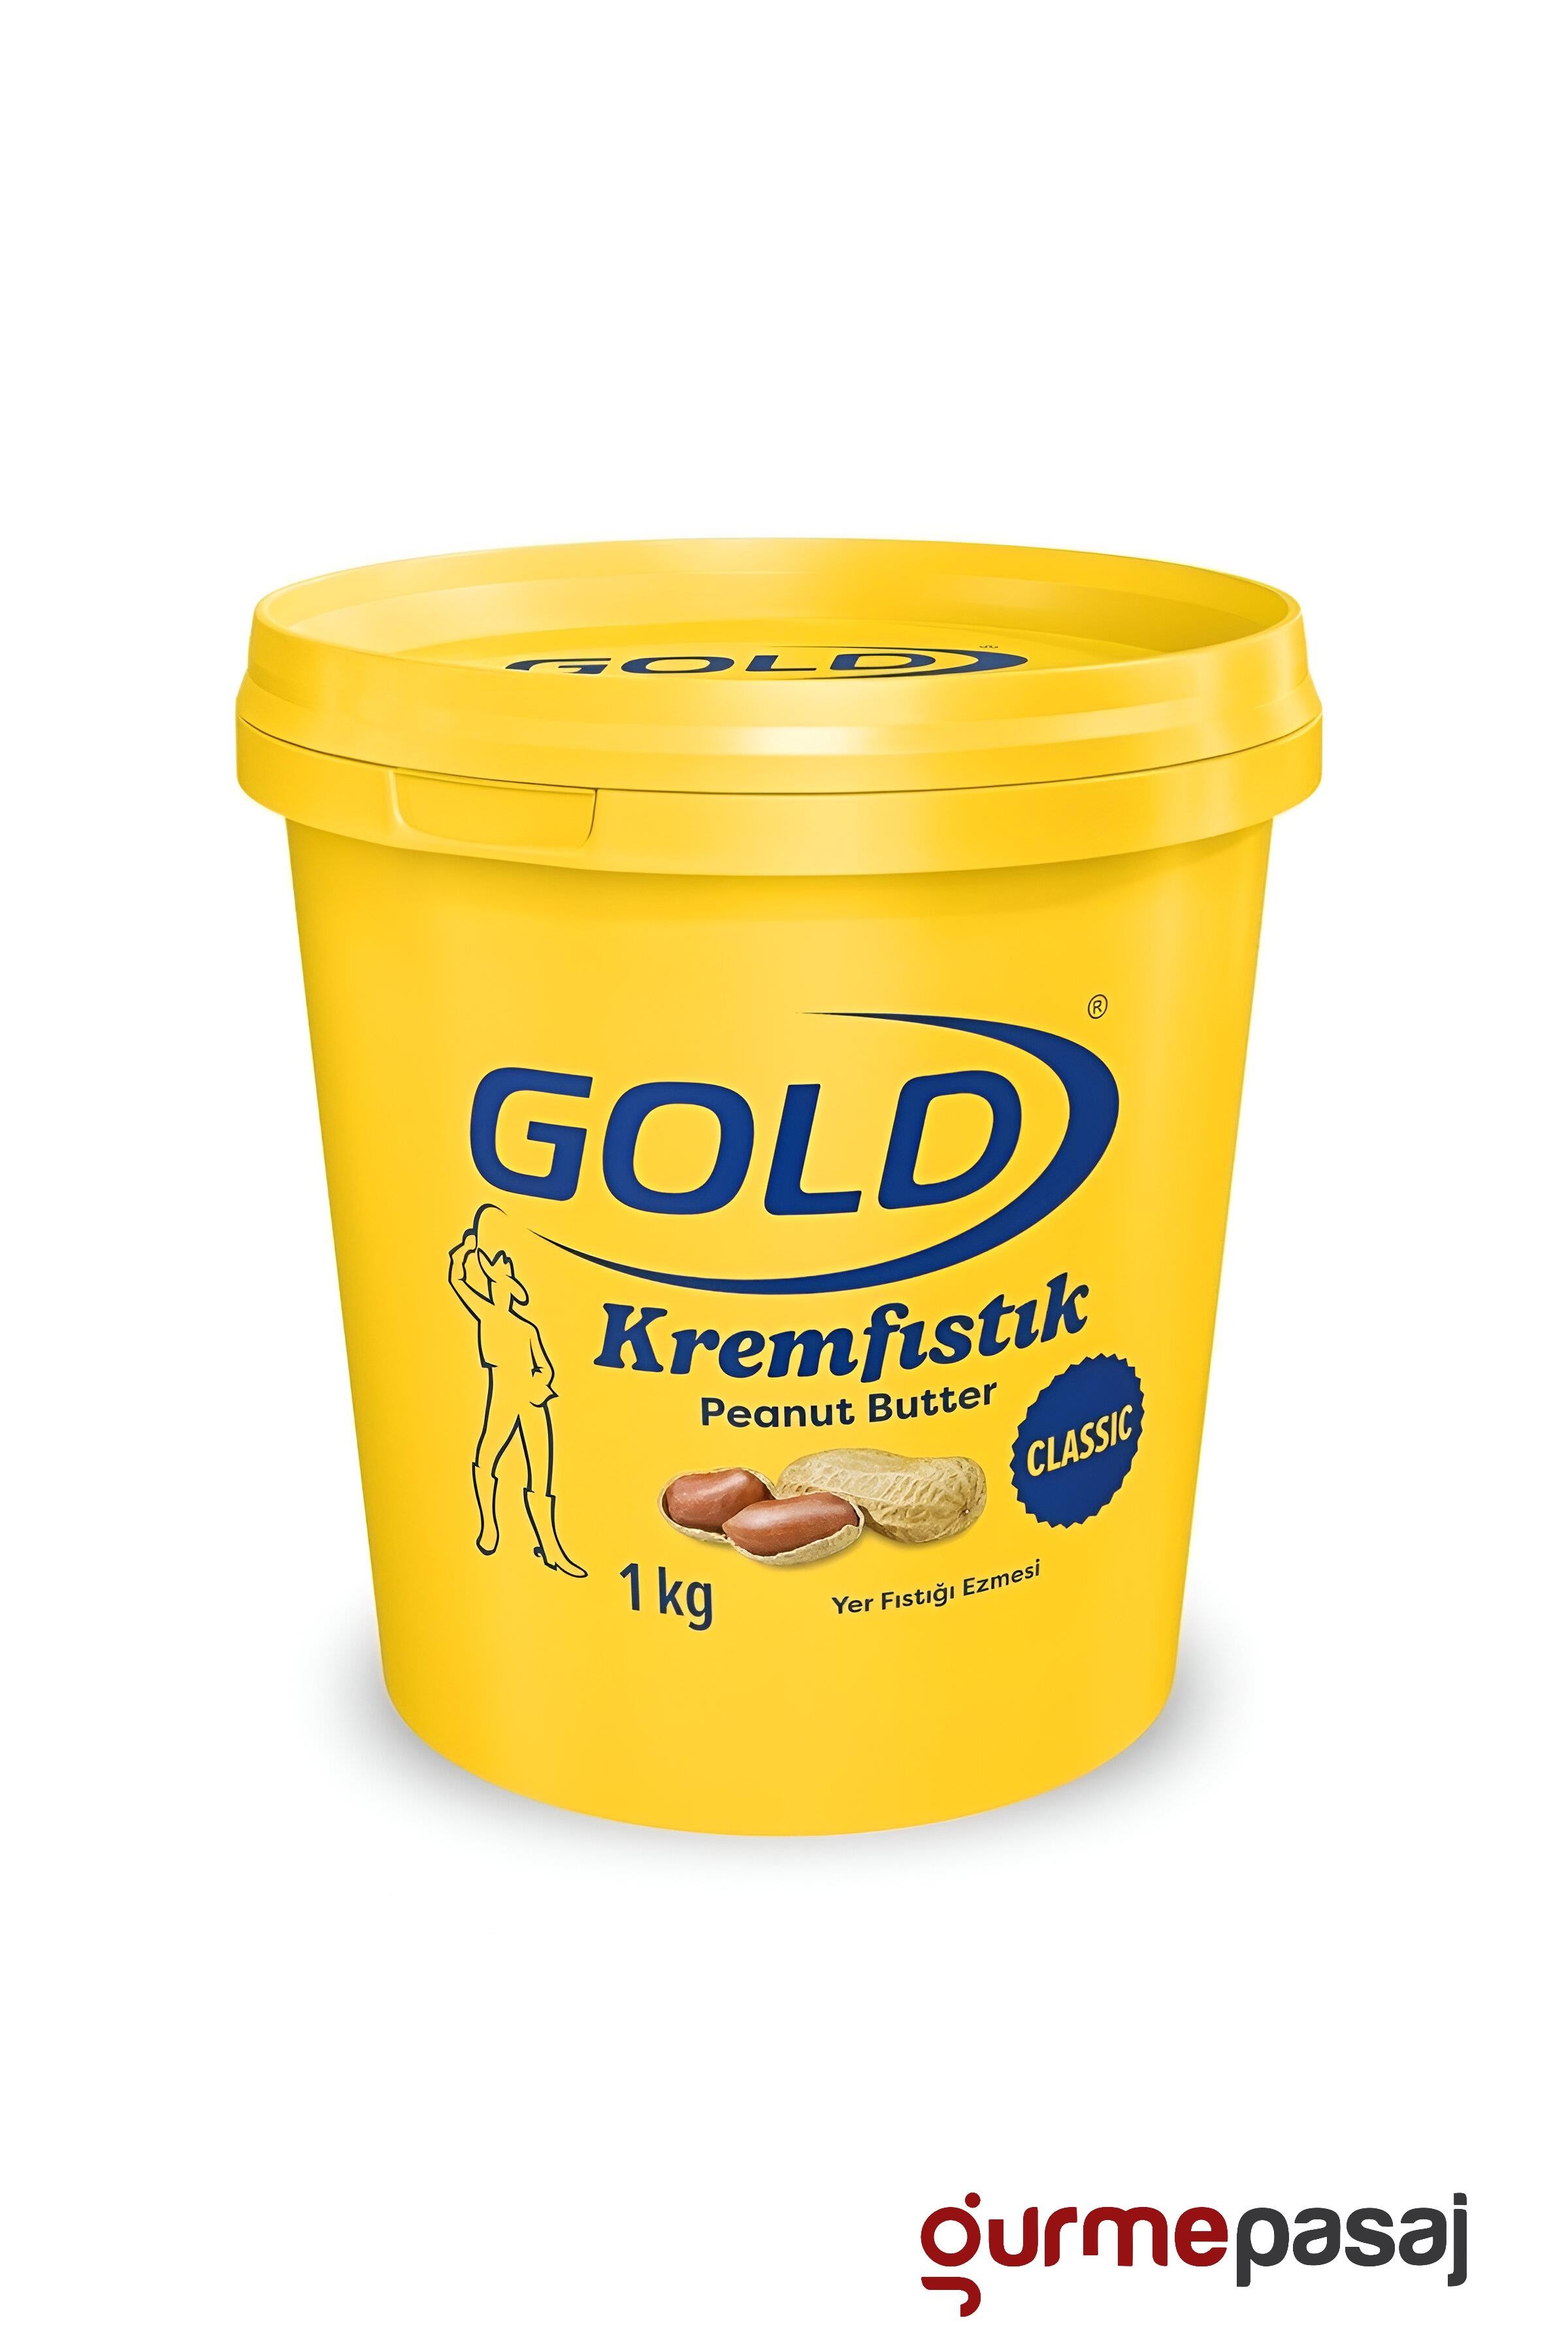 Polmak Gold Krem Fıstık Yer Fıstığı Ezmesi 1 KG x 6 Adet